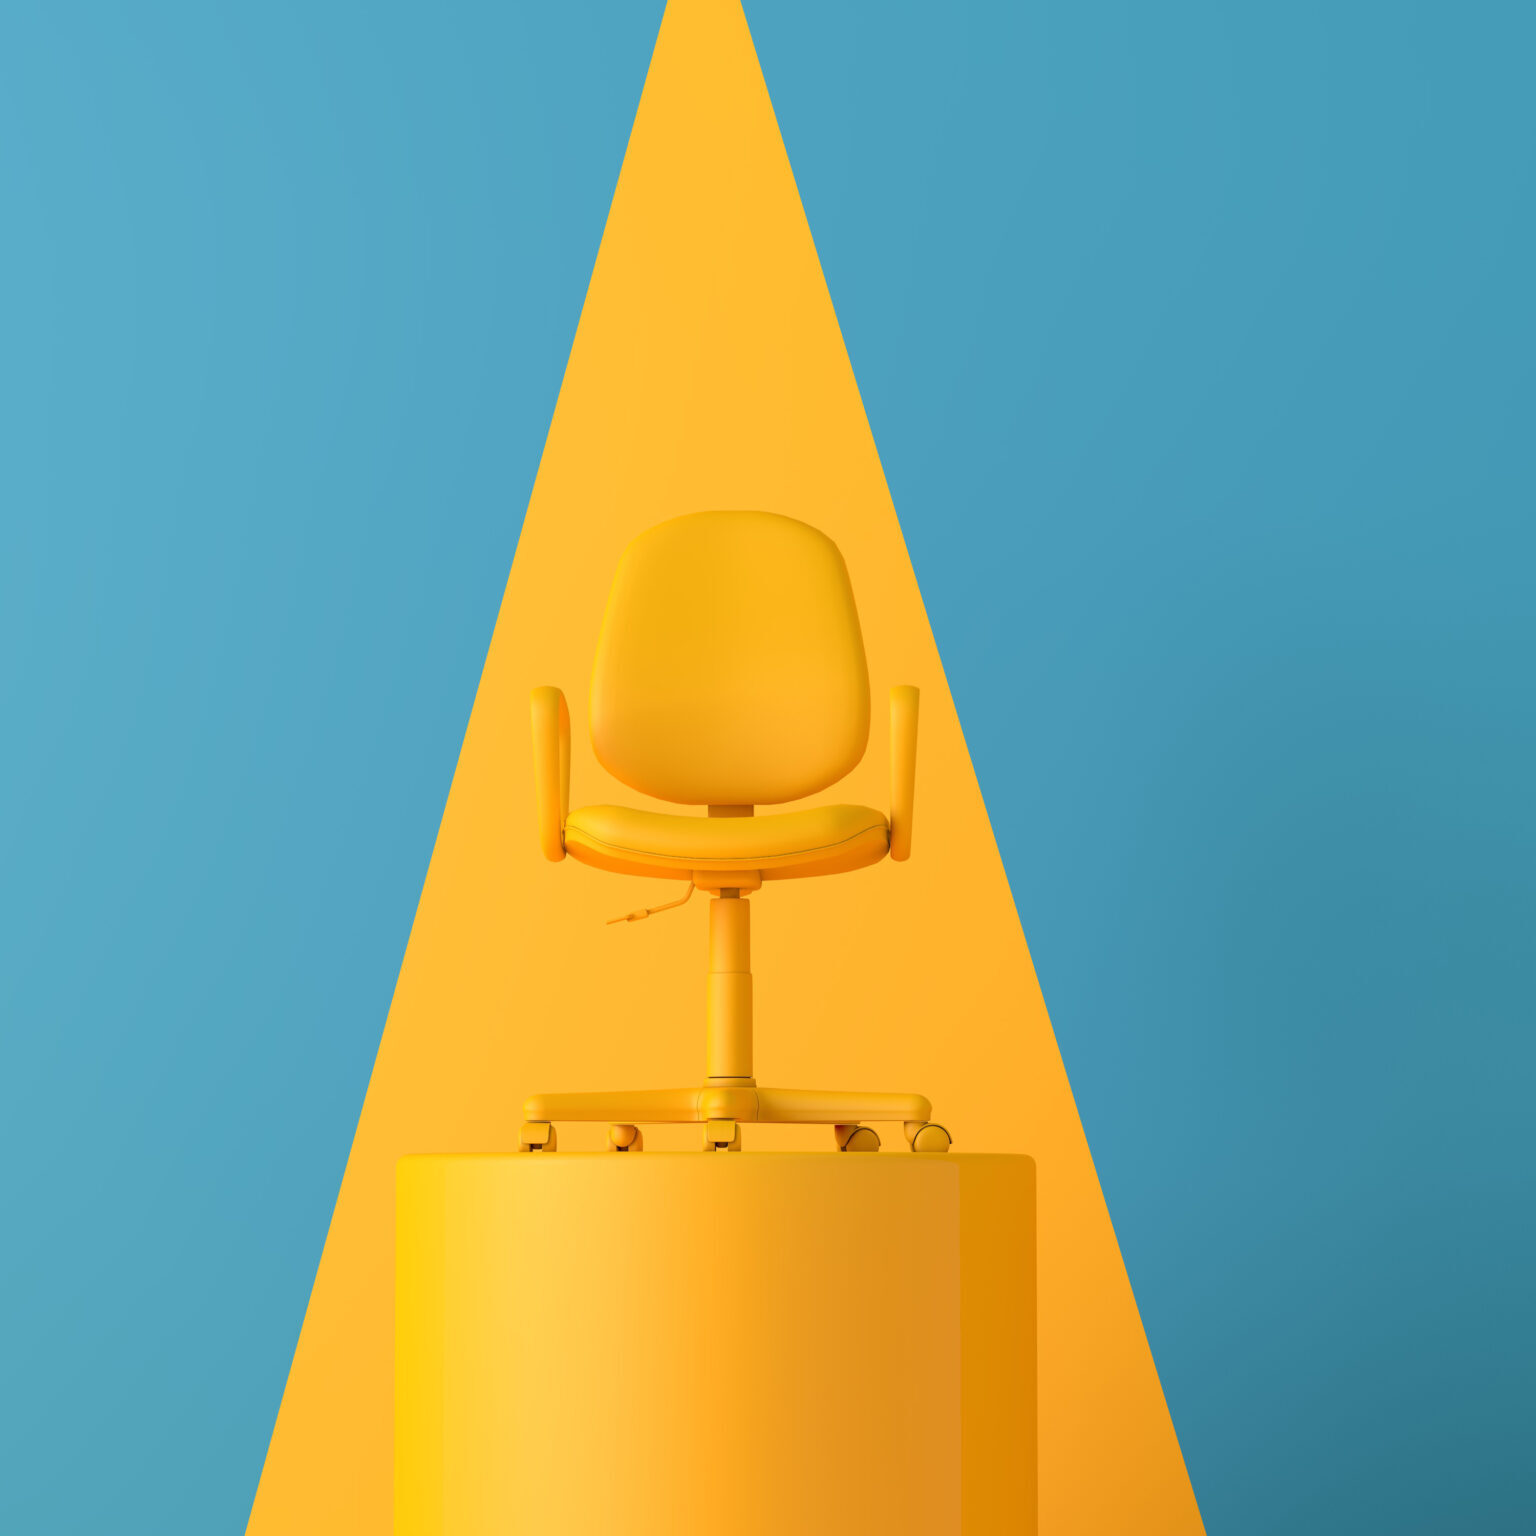 An,Office,Chair,High,On,A,Podium.,Business,Development,Concept.